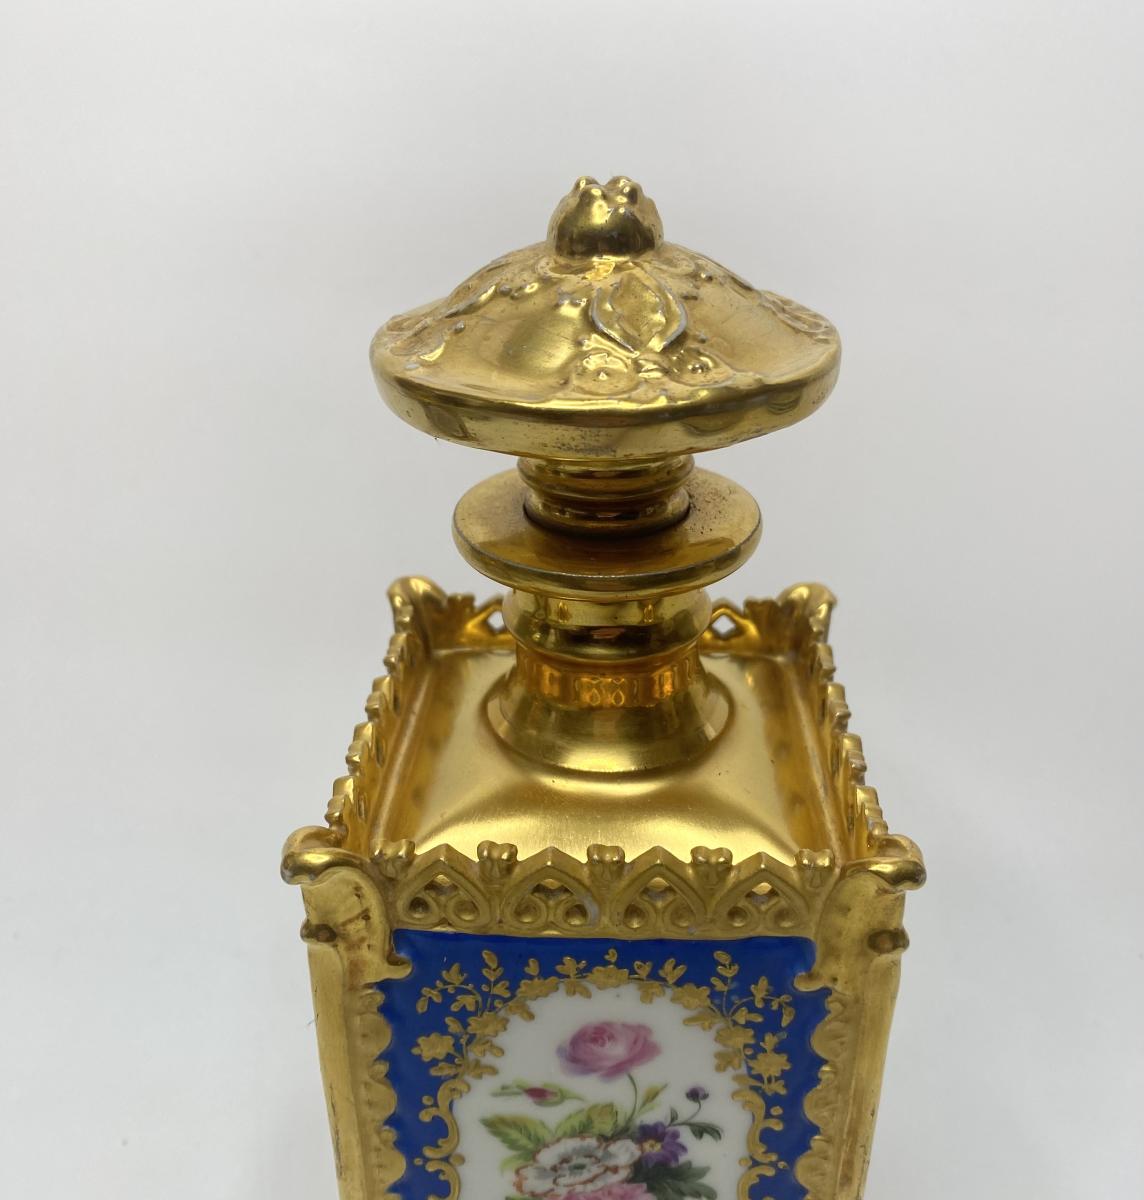 Pair Jacob Petit porcelain scent bottles, Paris, circa 1840